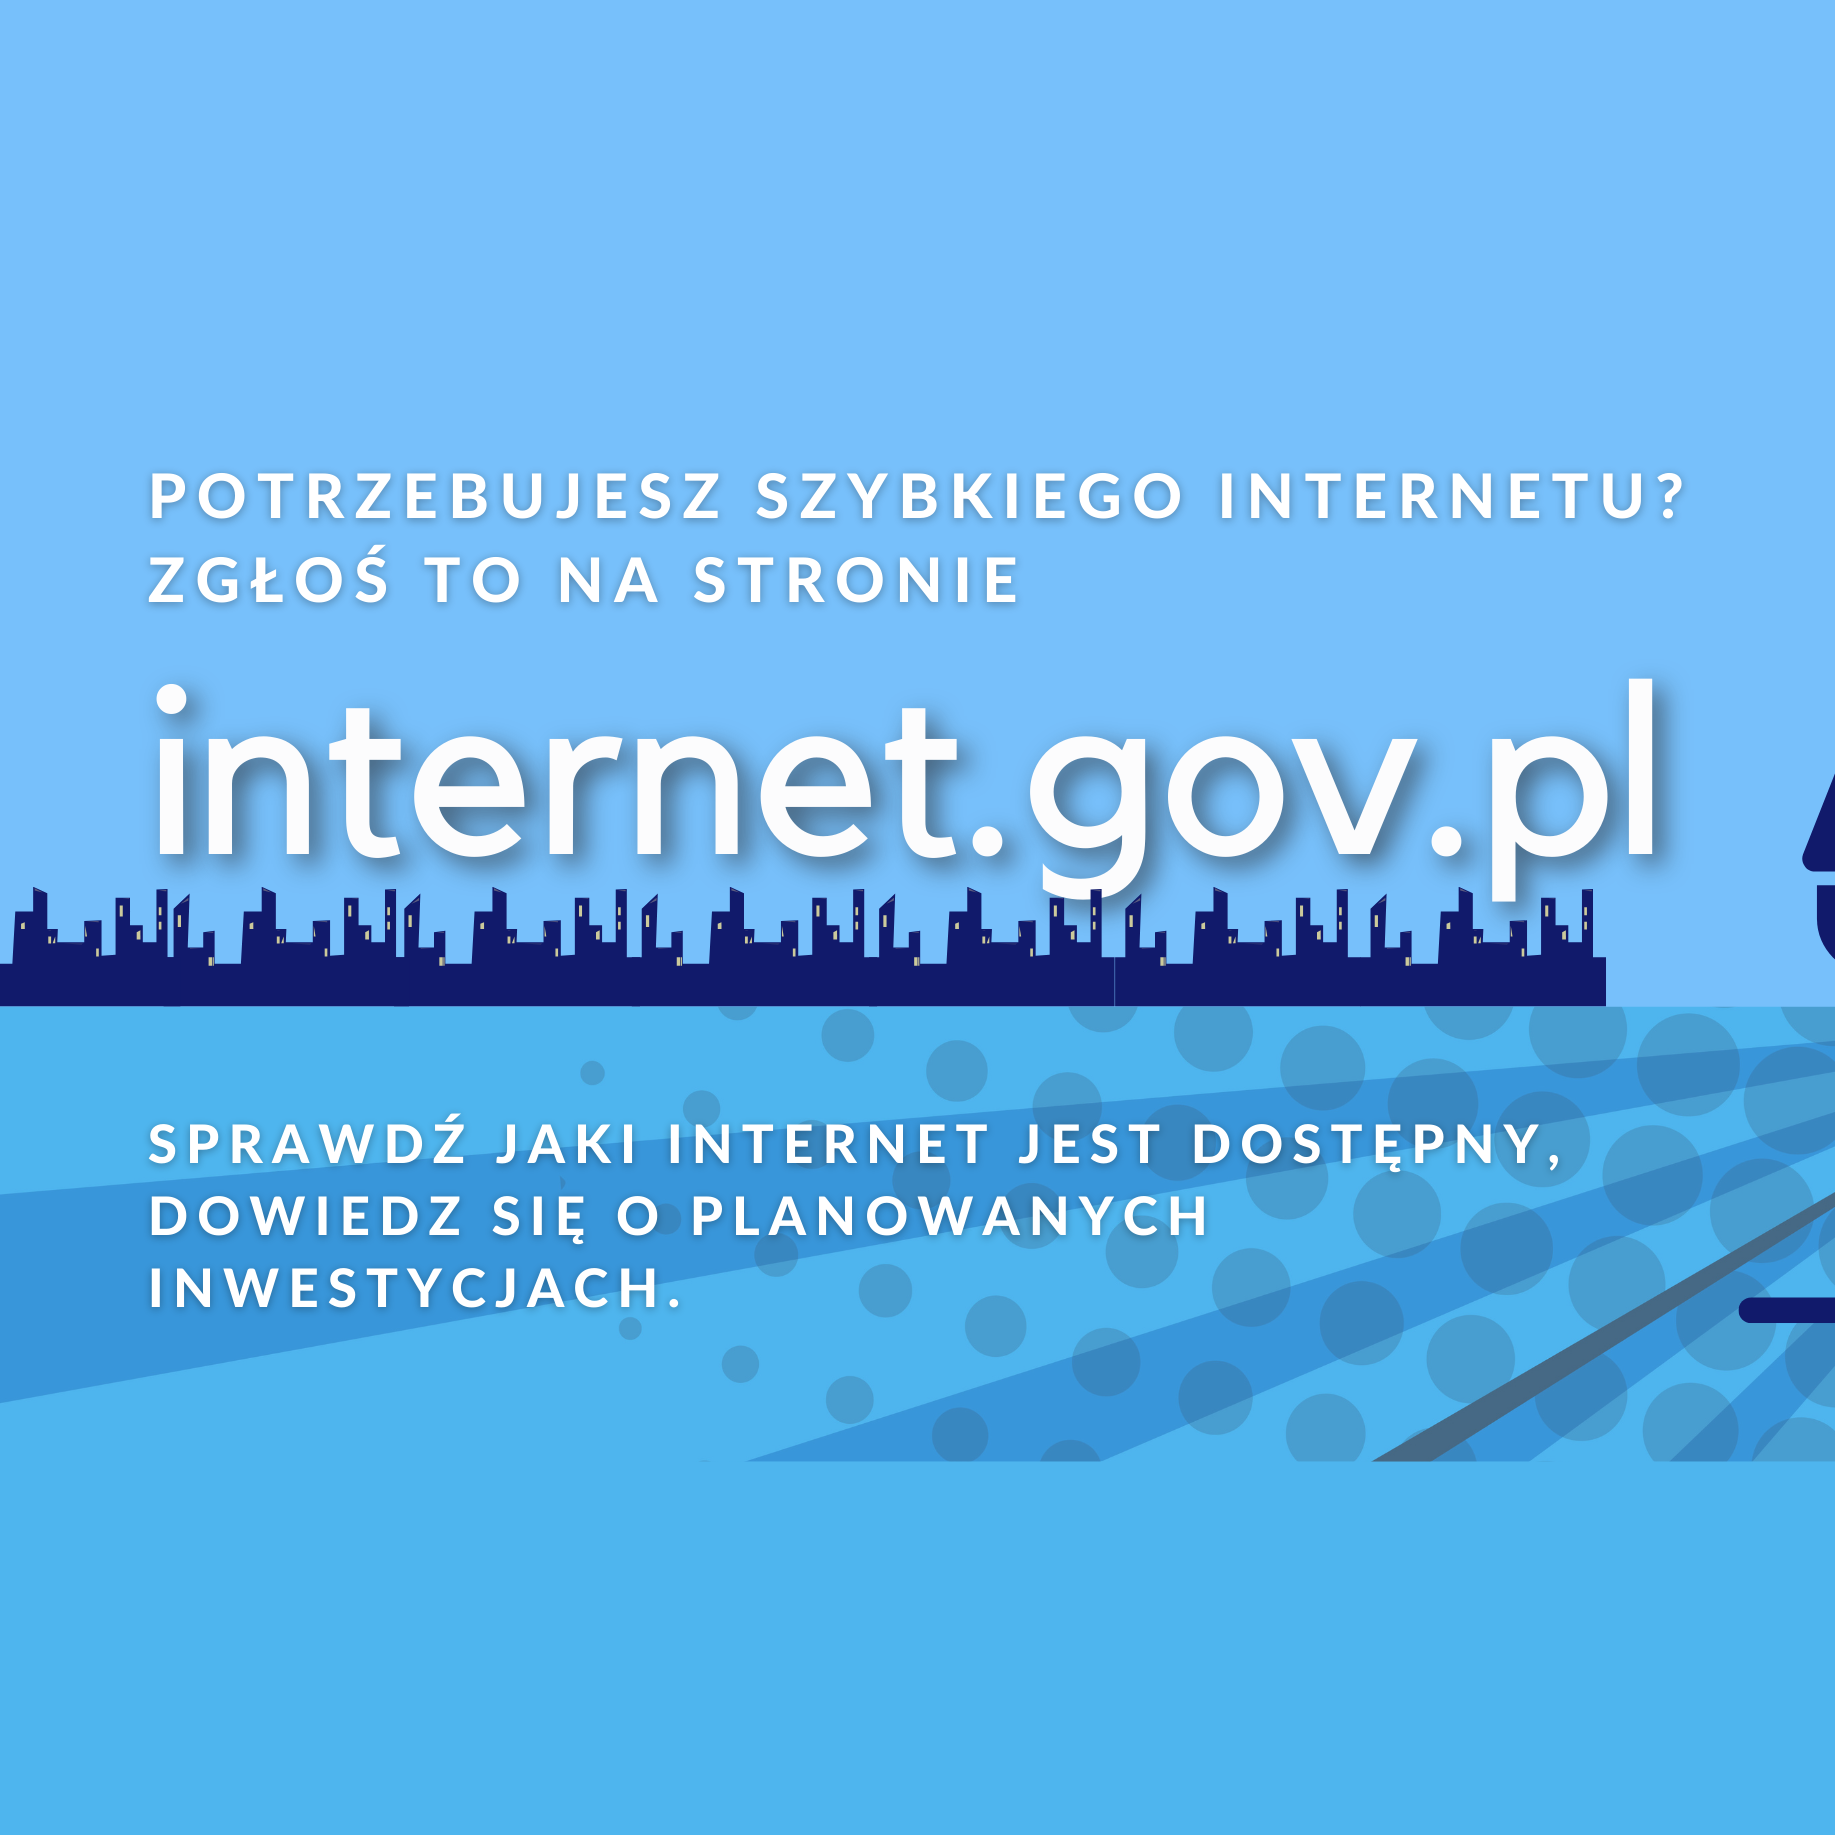 internet.gov.pl - kliknięcie spowoduje otwarcie nowego okna